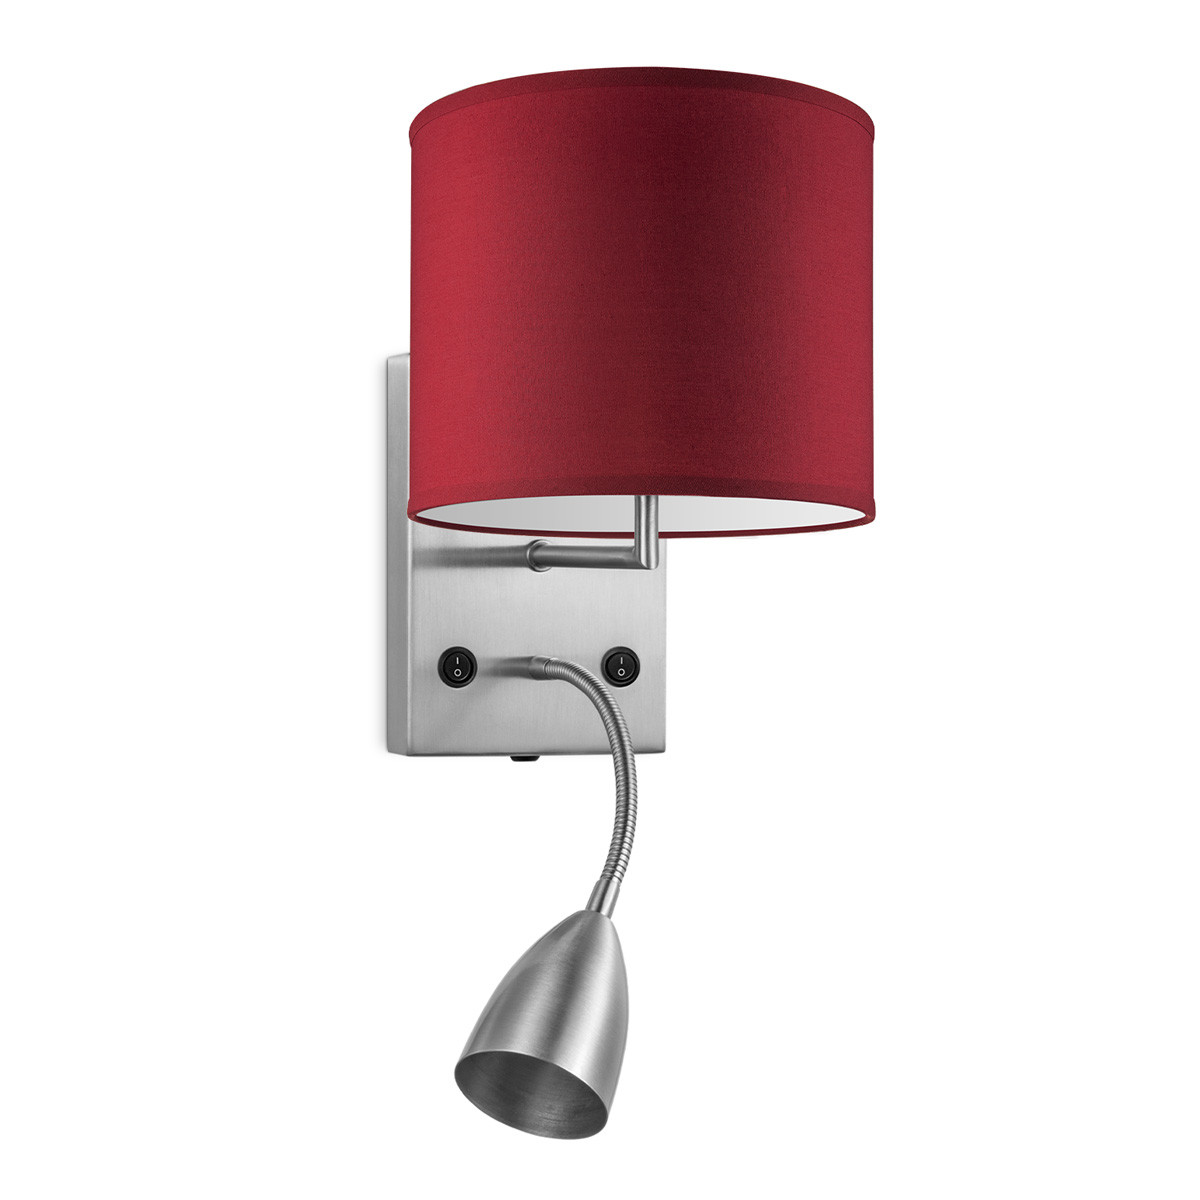 Light depot - wandlamp read bling Ø 20 cm - rood - Outlet